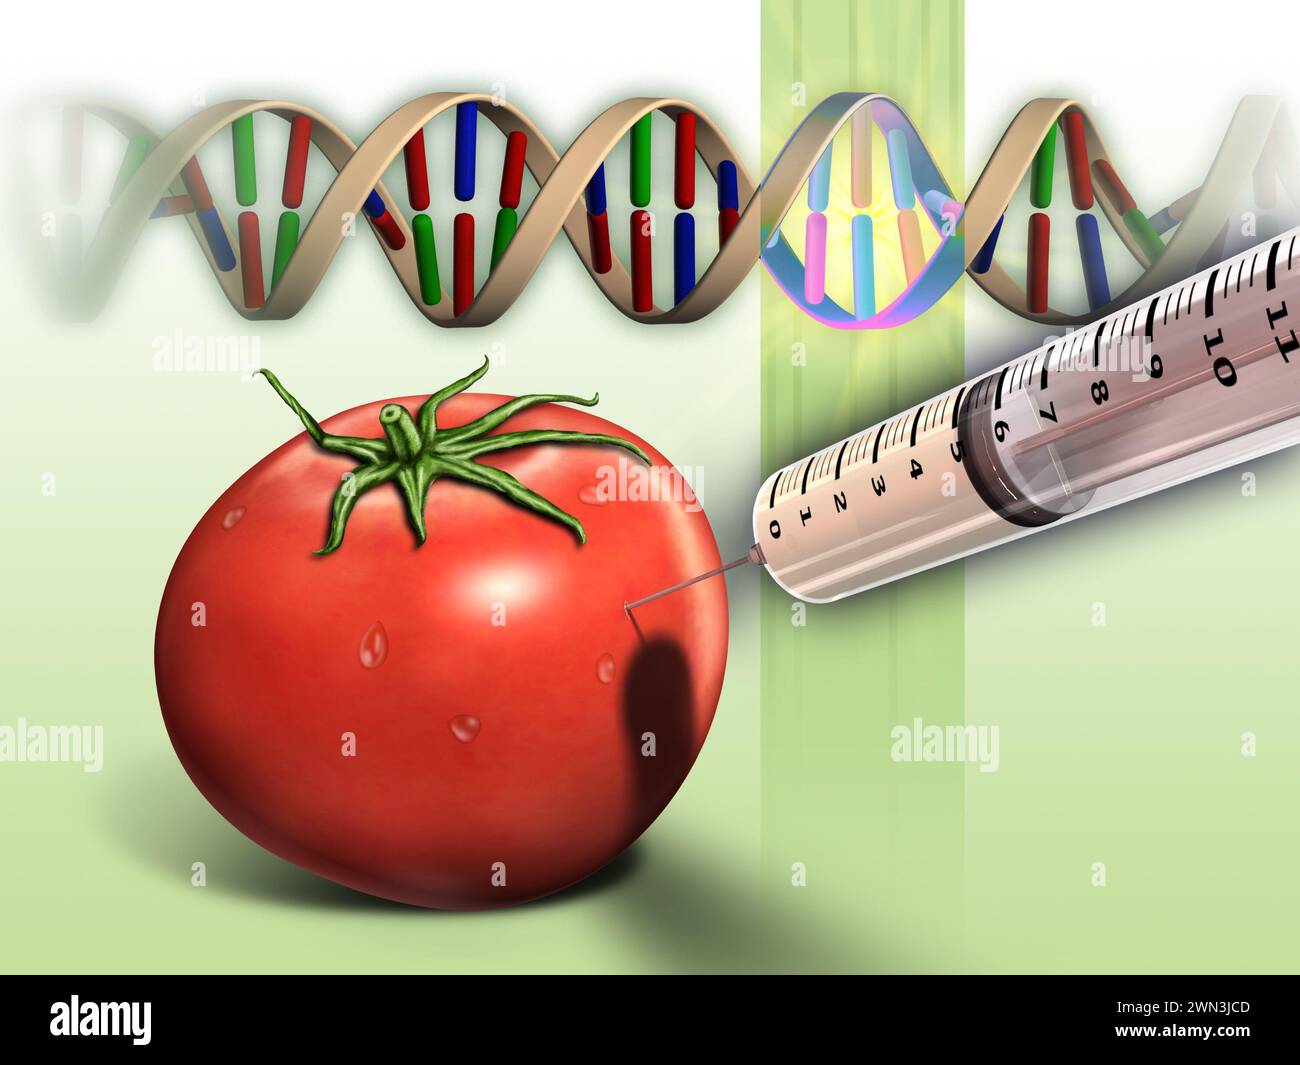 Secuencia de tomate y adn genéticamente modificados. Ilustración digital. Foto de stock